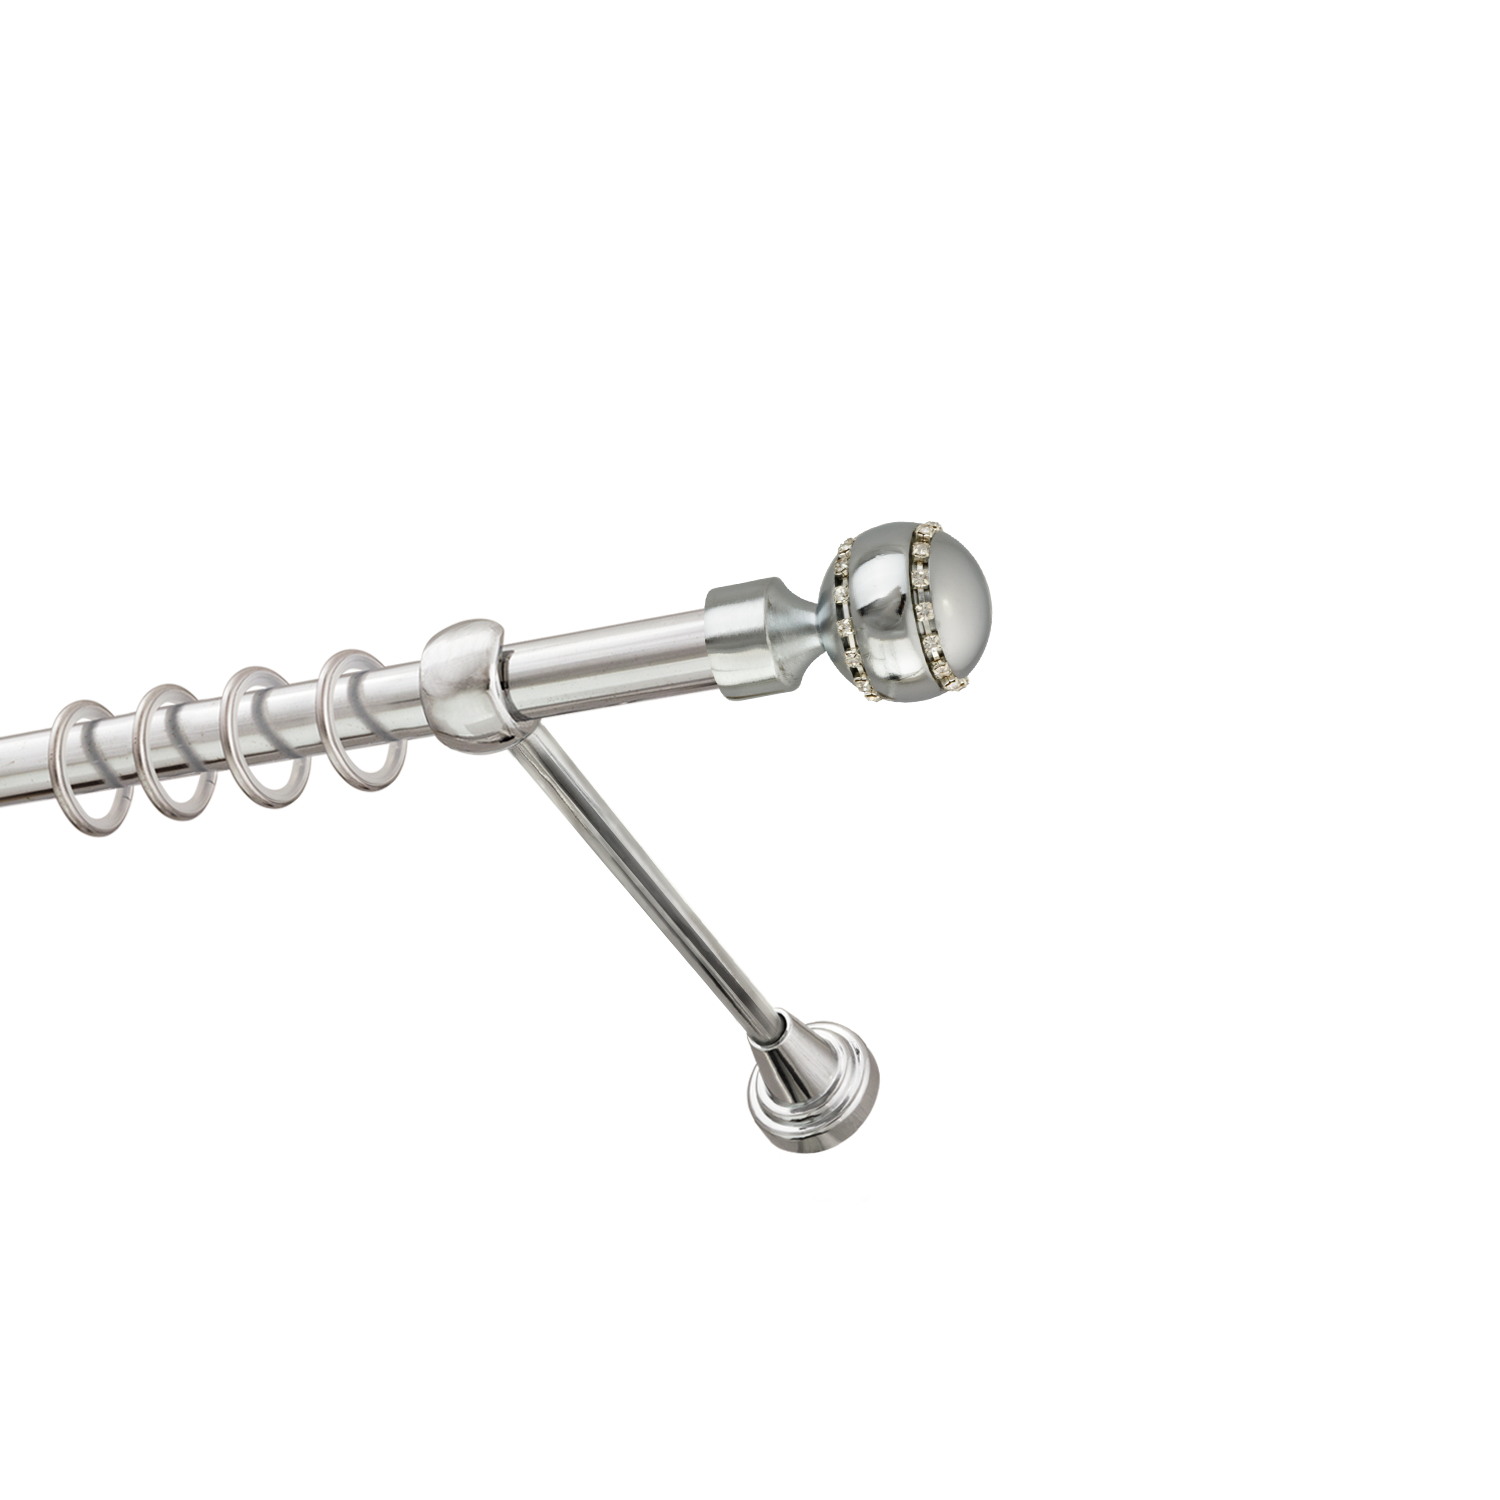 Металлический карниз для штор Модерн, однорядный 16 мм, серебро, гладкая штанга, длина 160 см - фото Wikidecor.ru